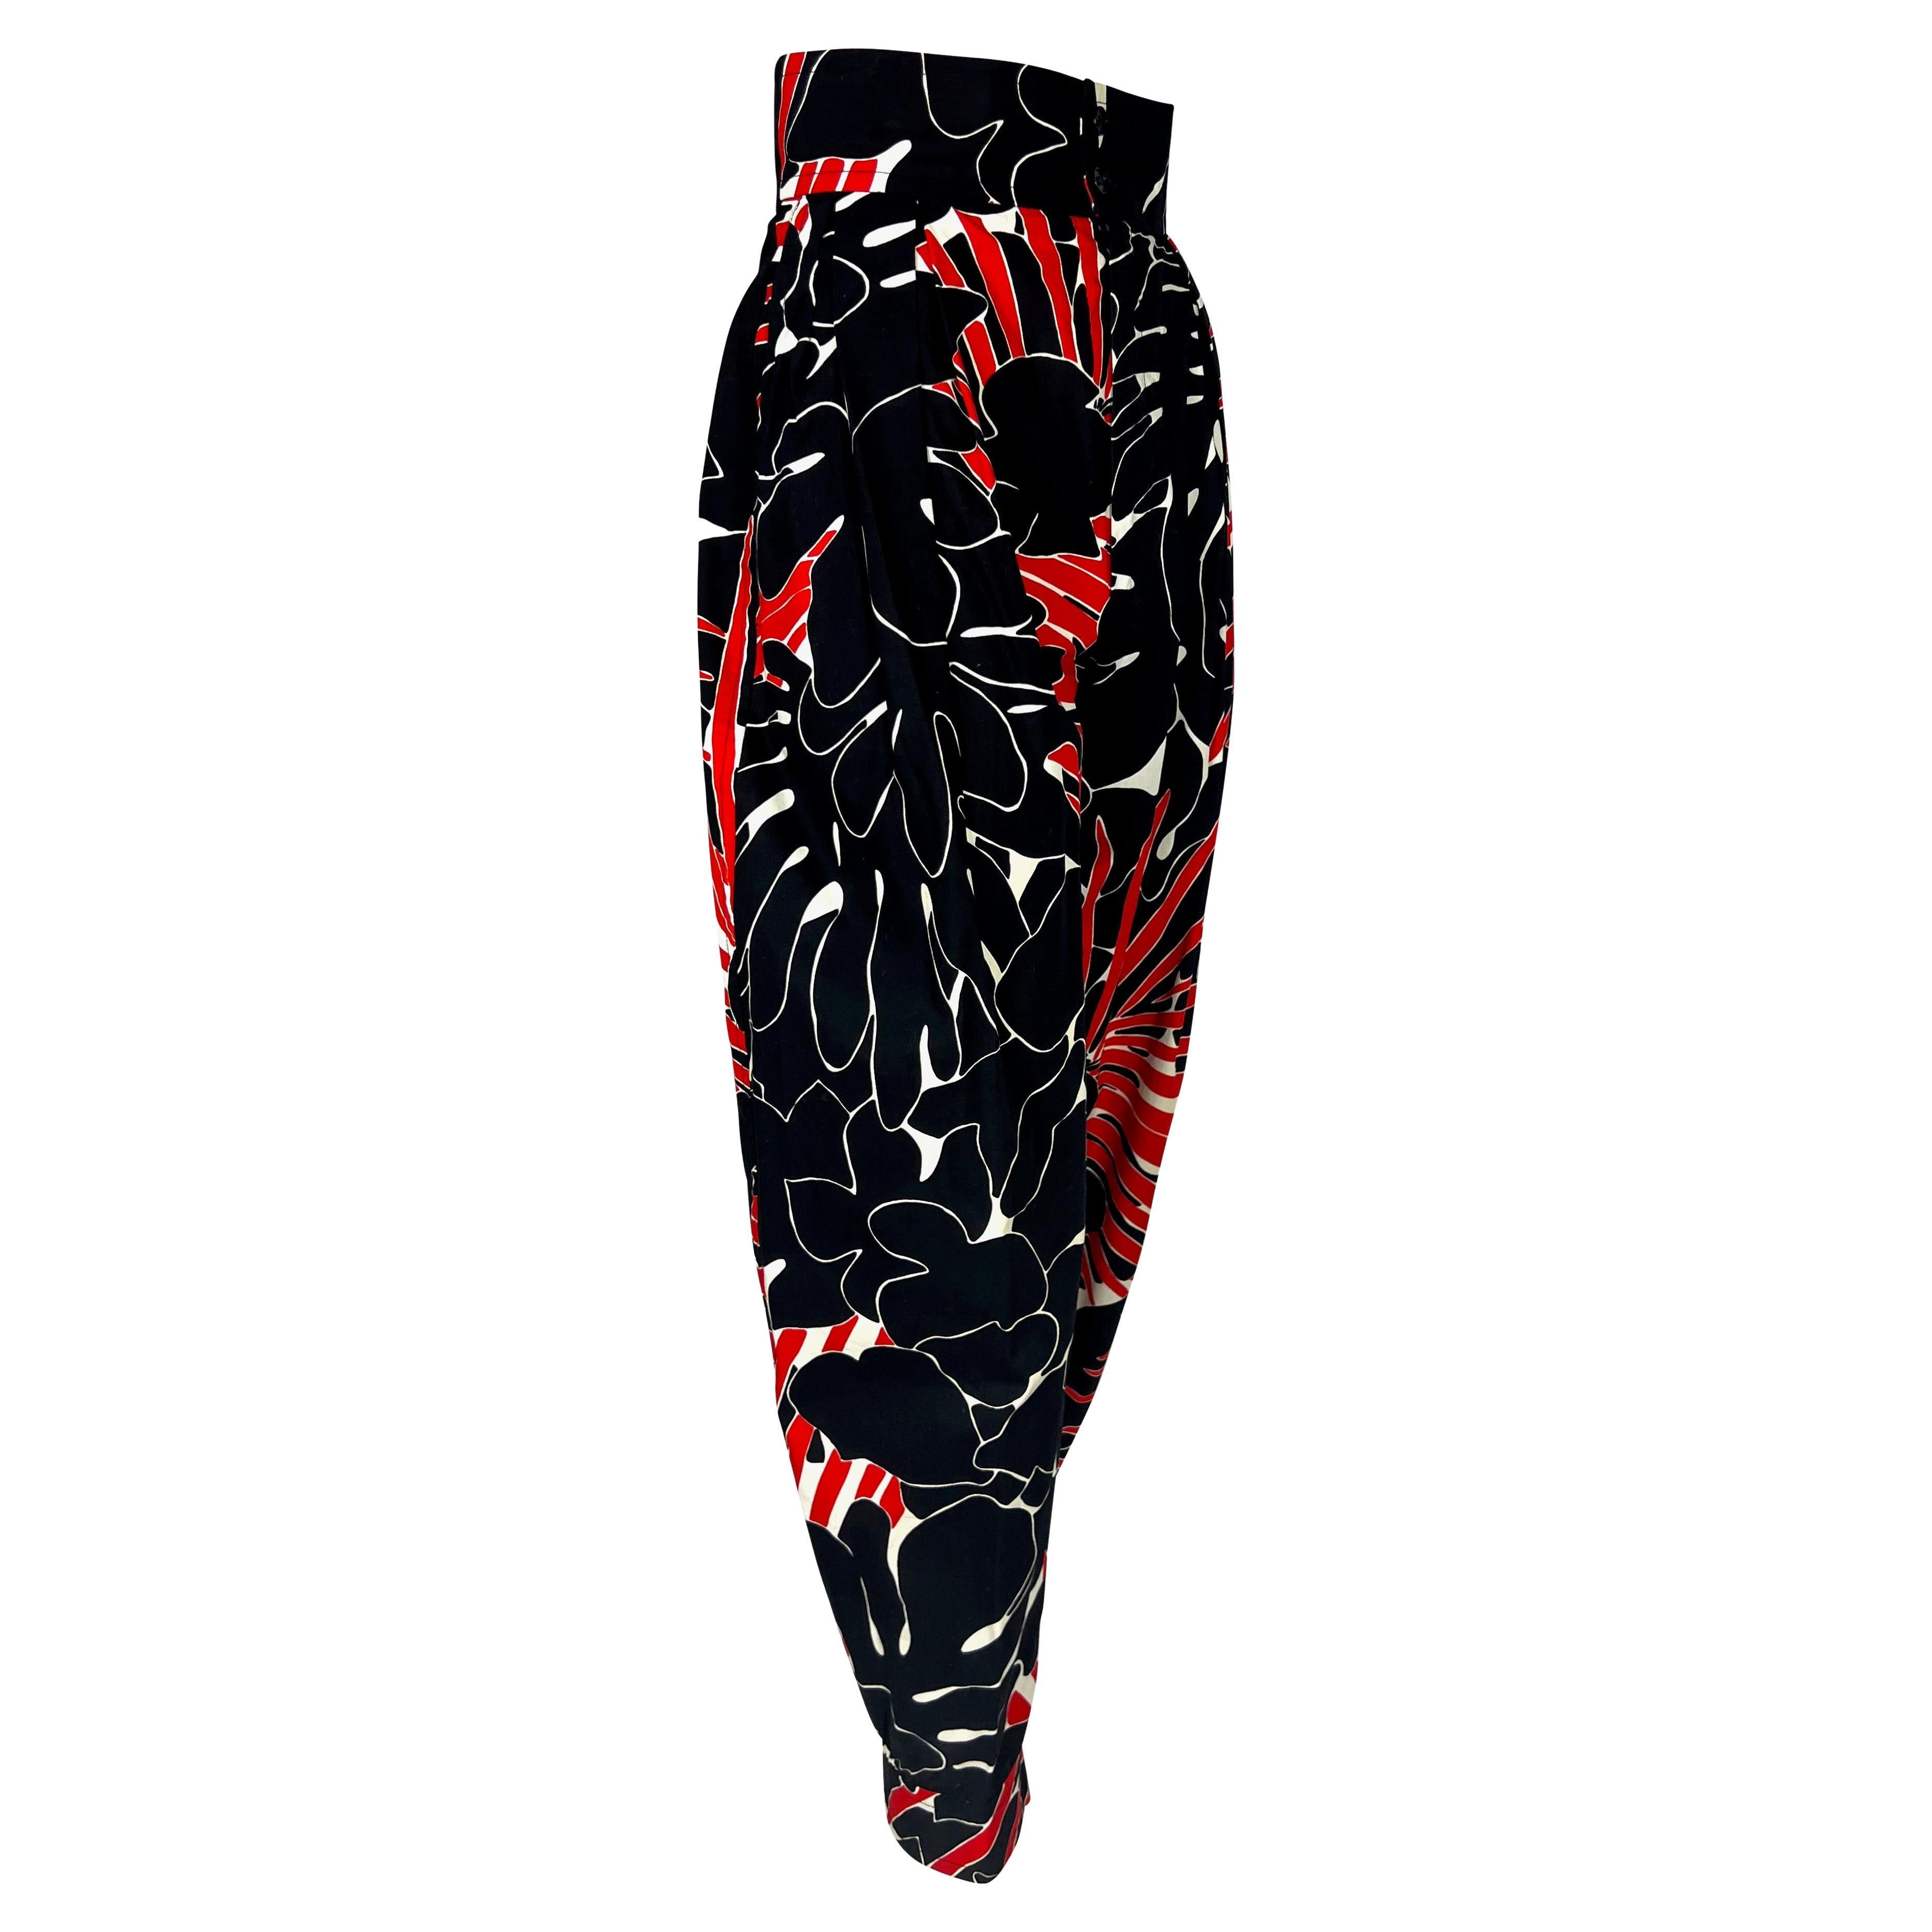 S/S 1985 Saint Laurent Rive Gauche Runway Black Red Floral Print Wide-Leg Pants For Sale 5